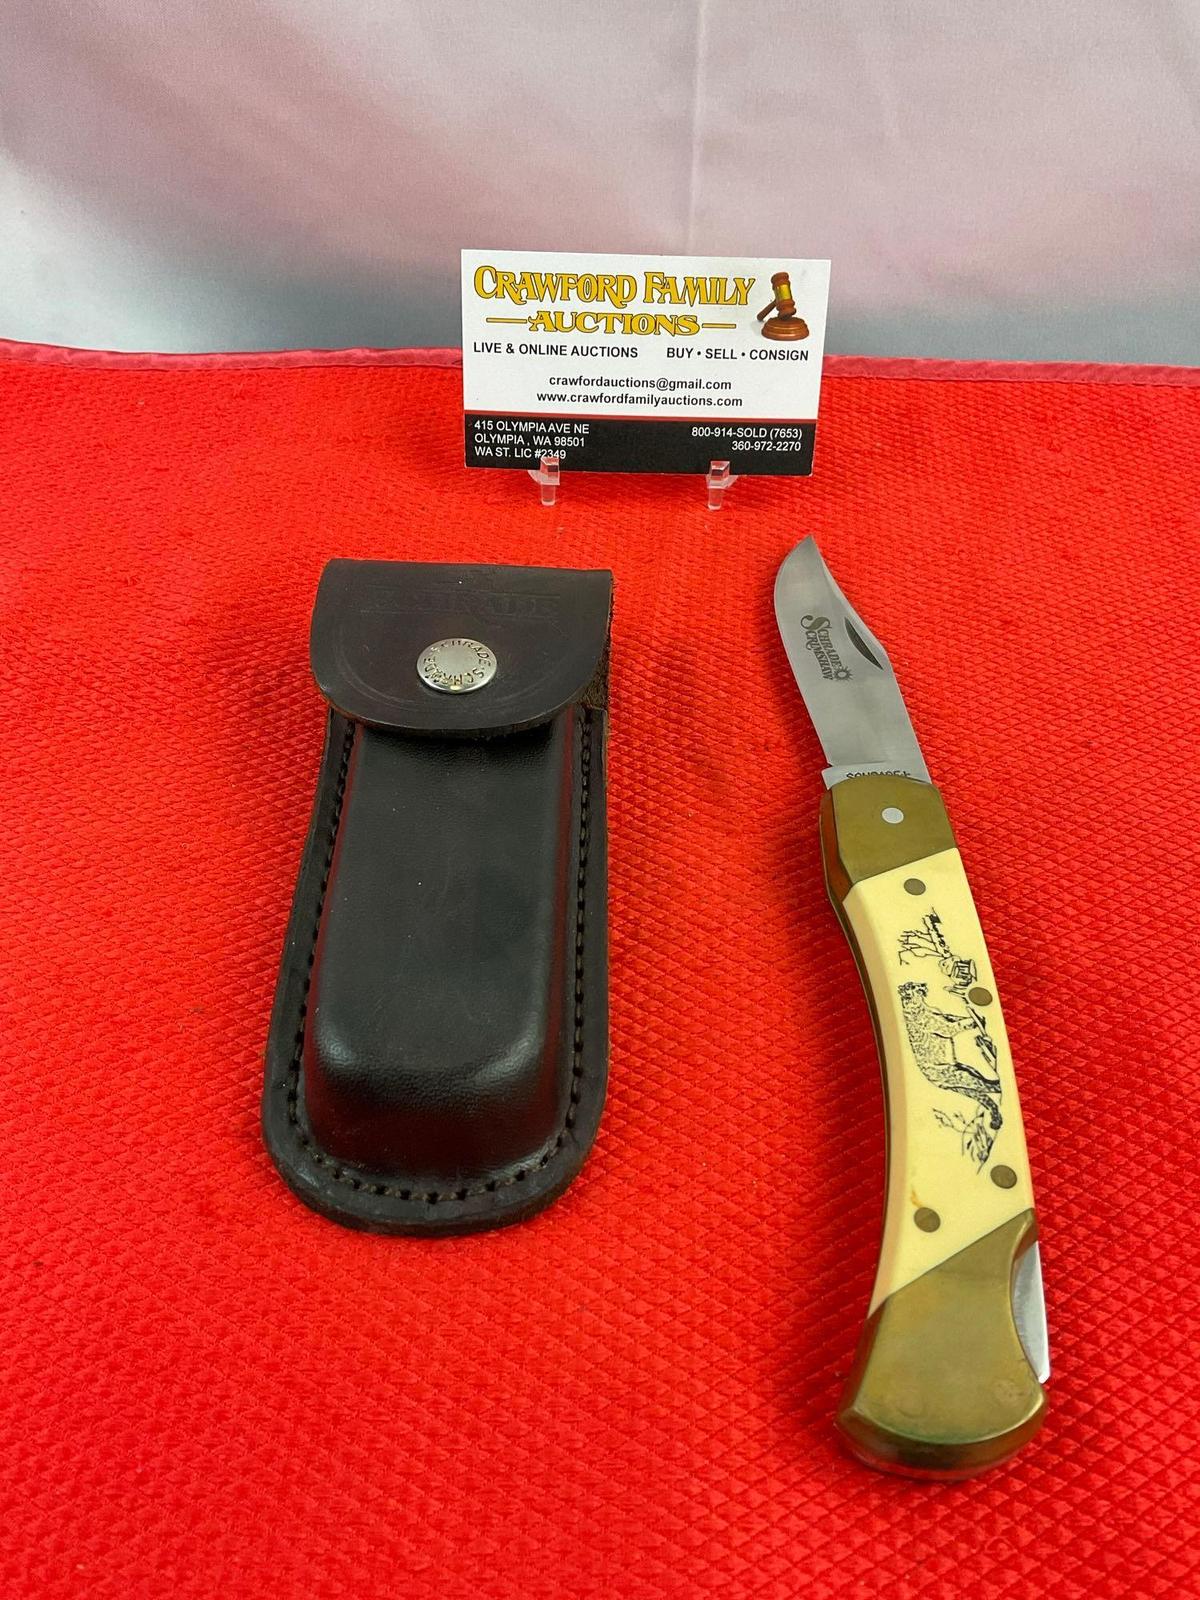 Vintage Schrade+ 3.5" Steel Folding Blade Pocket Knife Model 507SC w/ Etched Cougar & Sheath. See